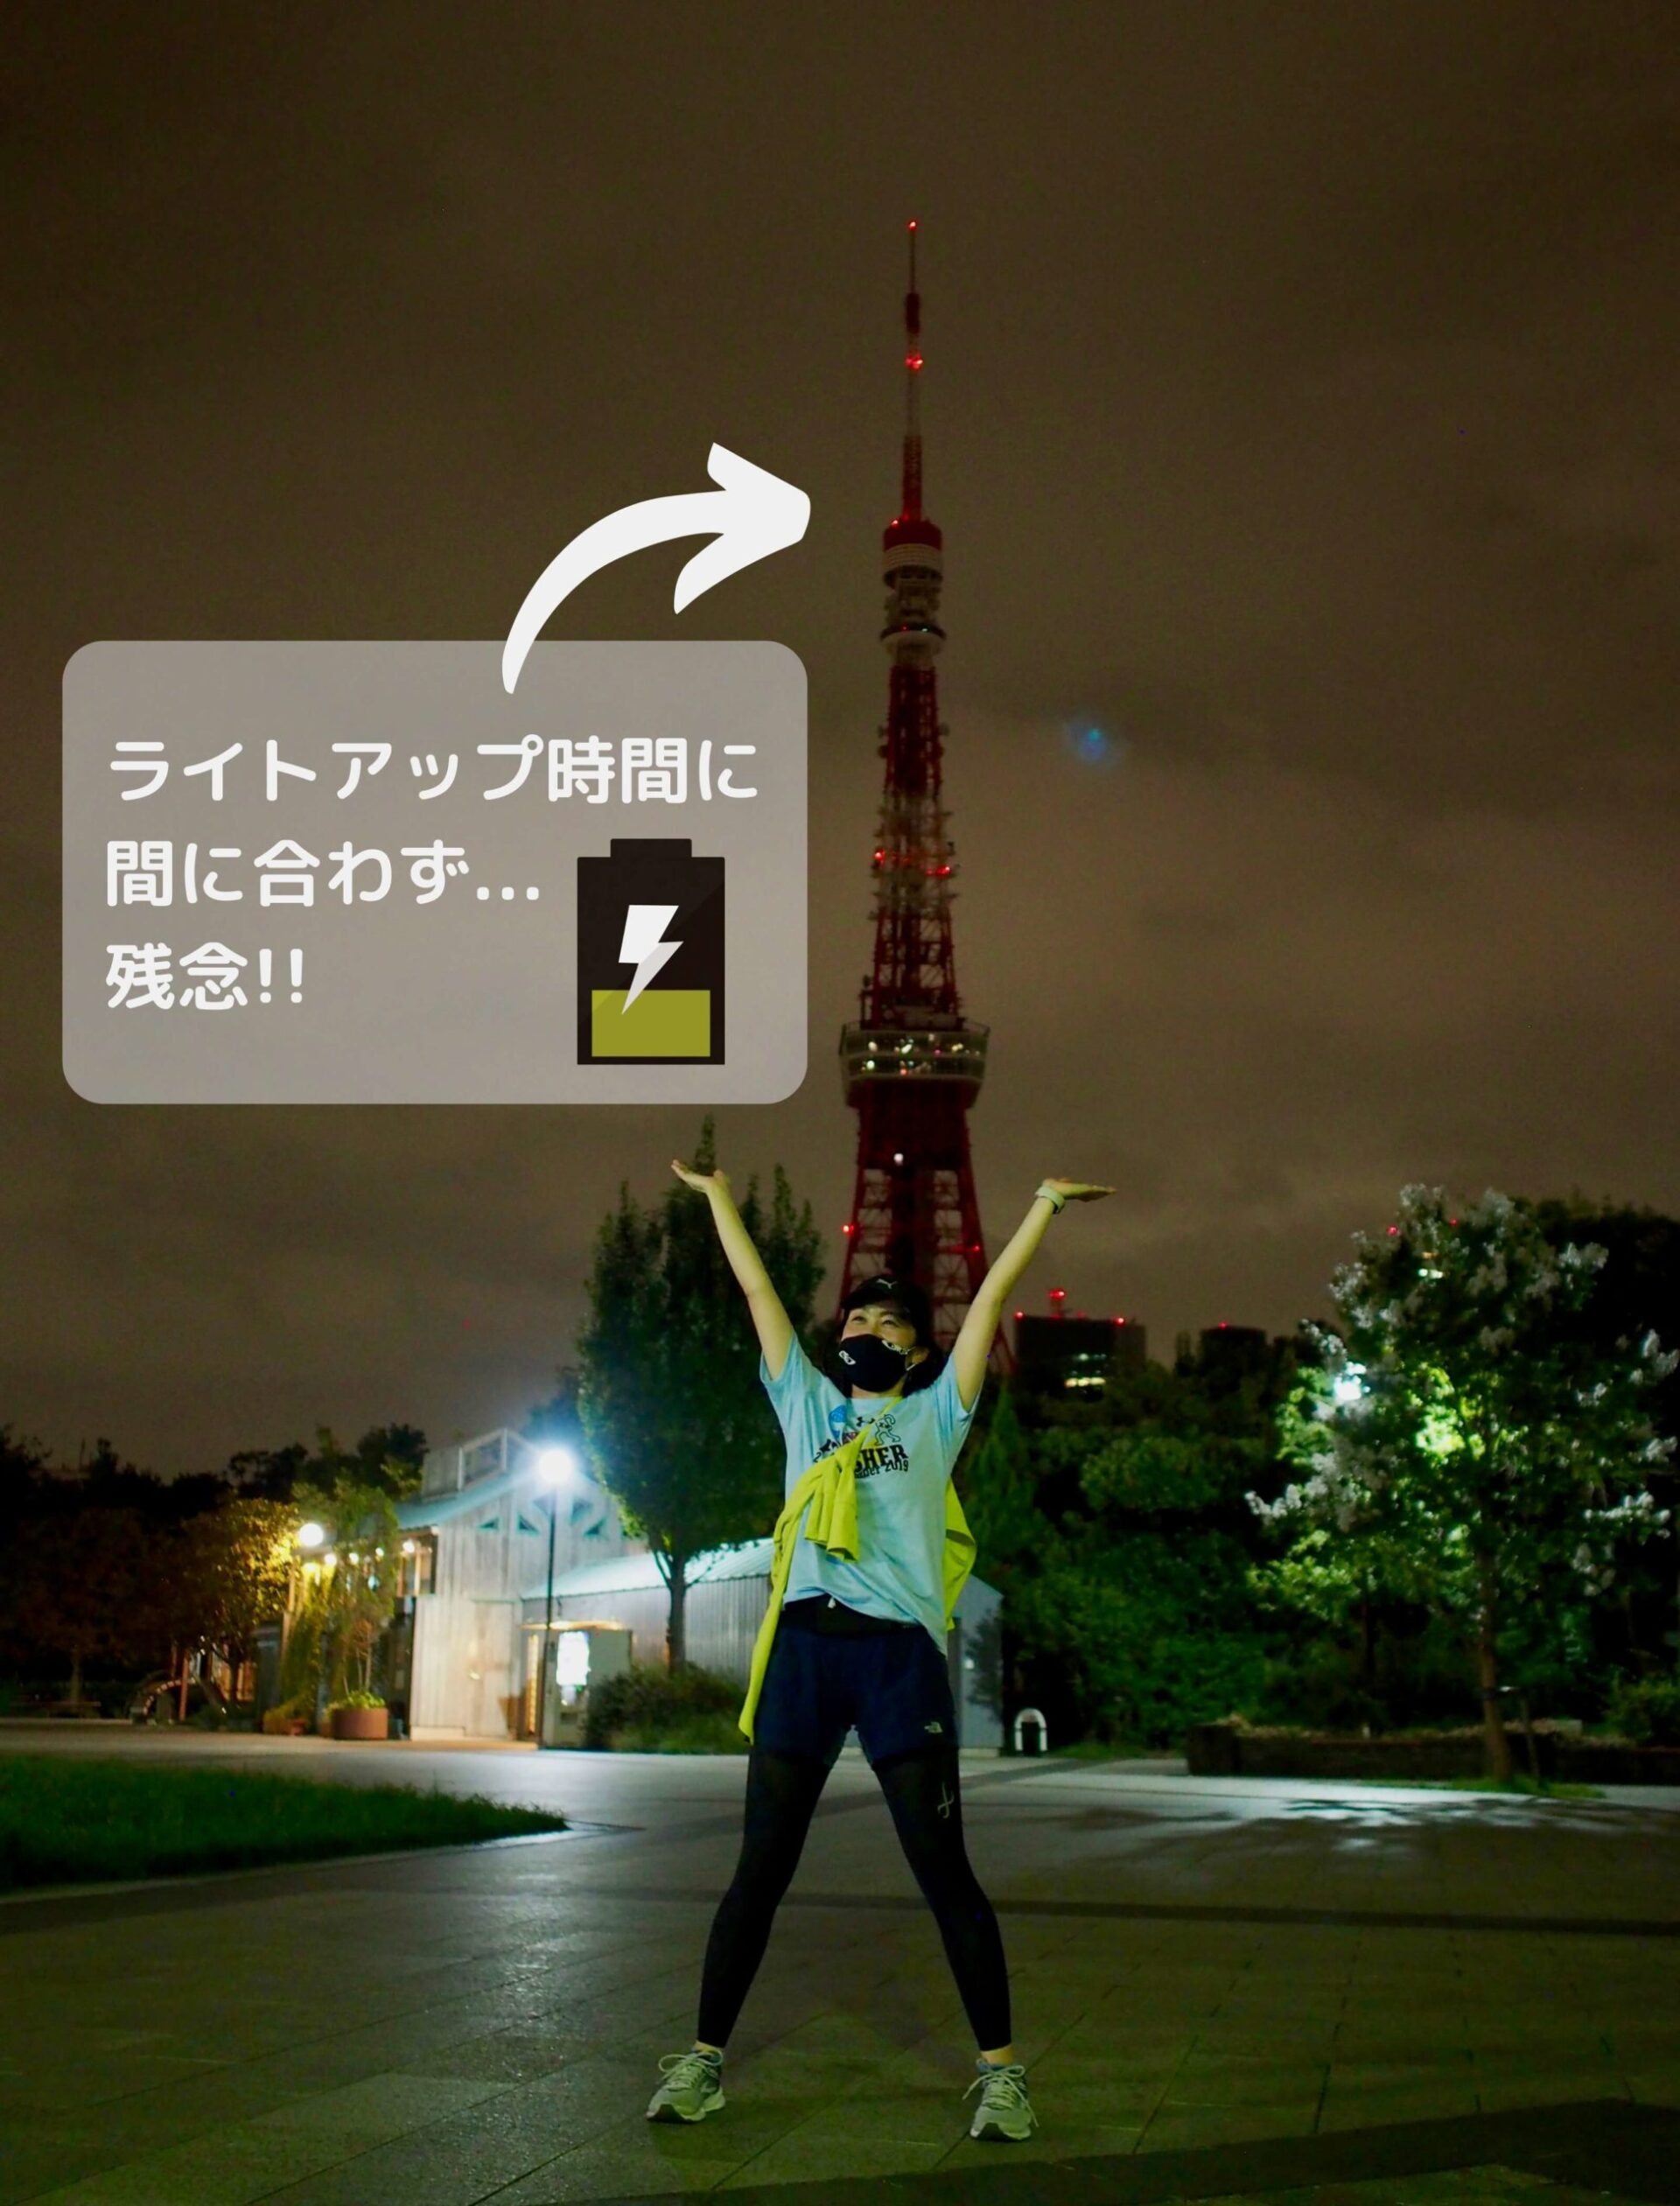 東京タワーのライトアップに間に合わず...残念